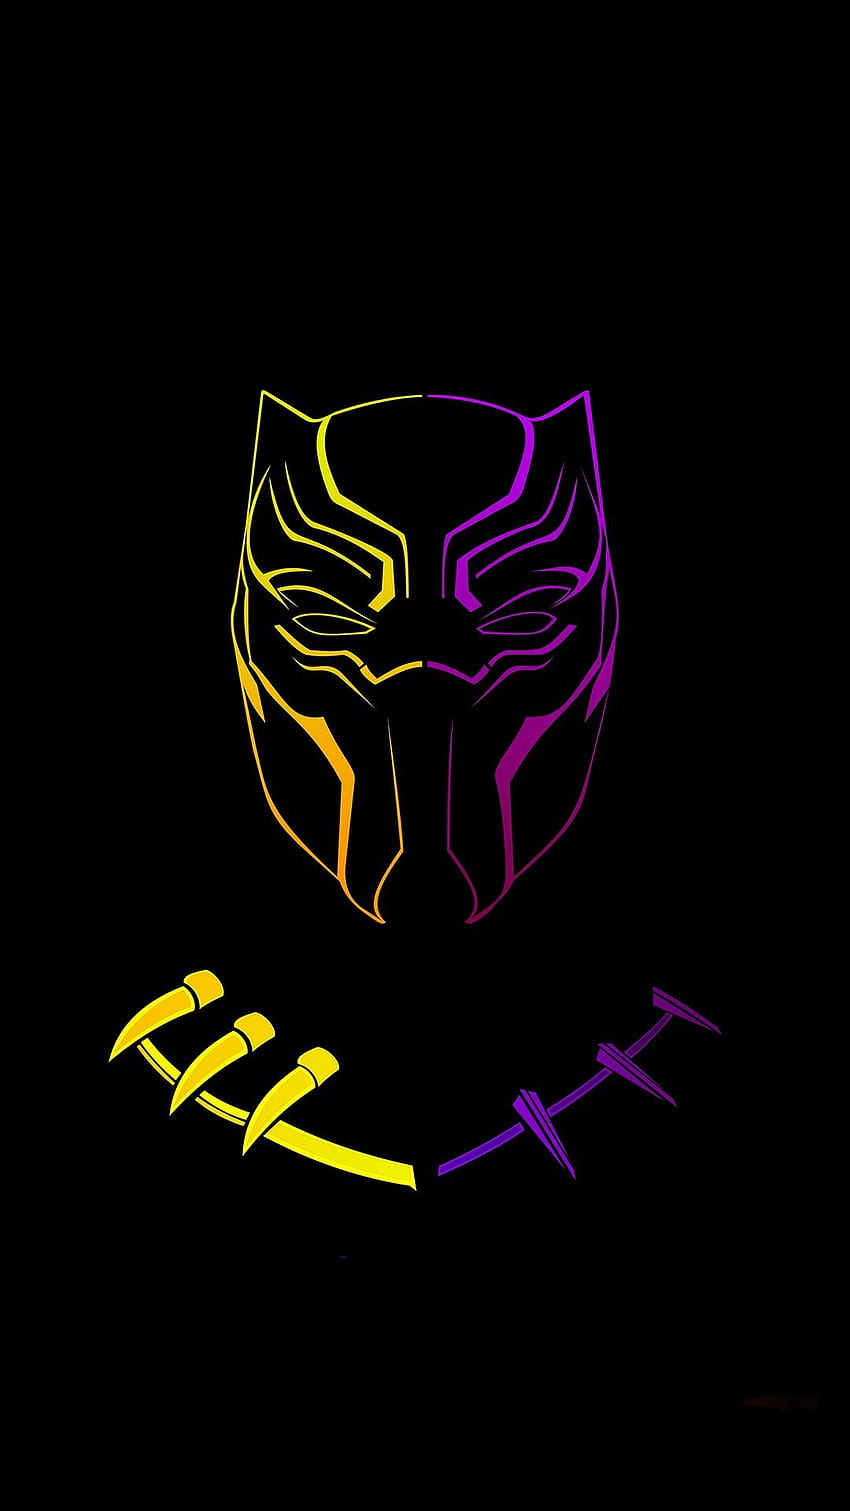 Black panther. Black panther marvel, Black panther, Marvel superheroes, Black Panther Marvel Logo HD phone wallpaper